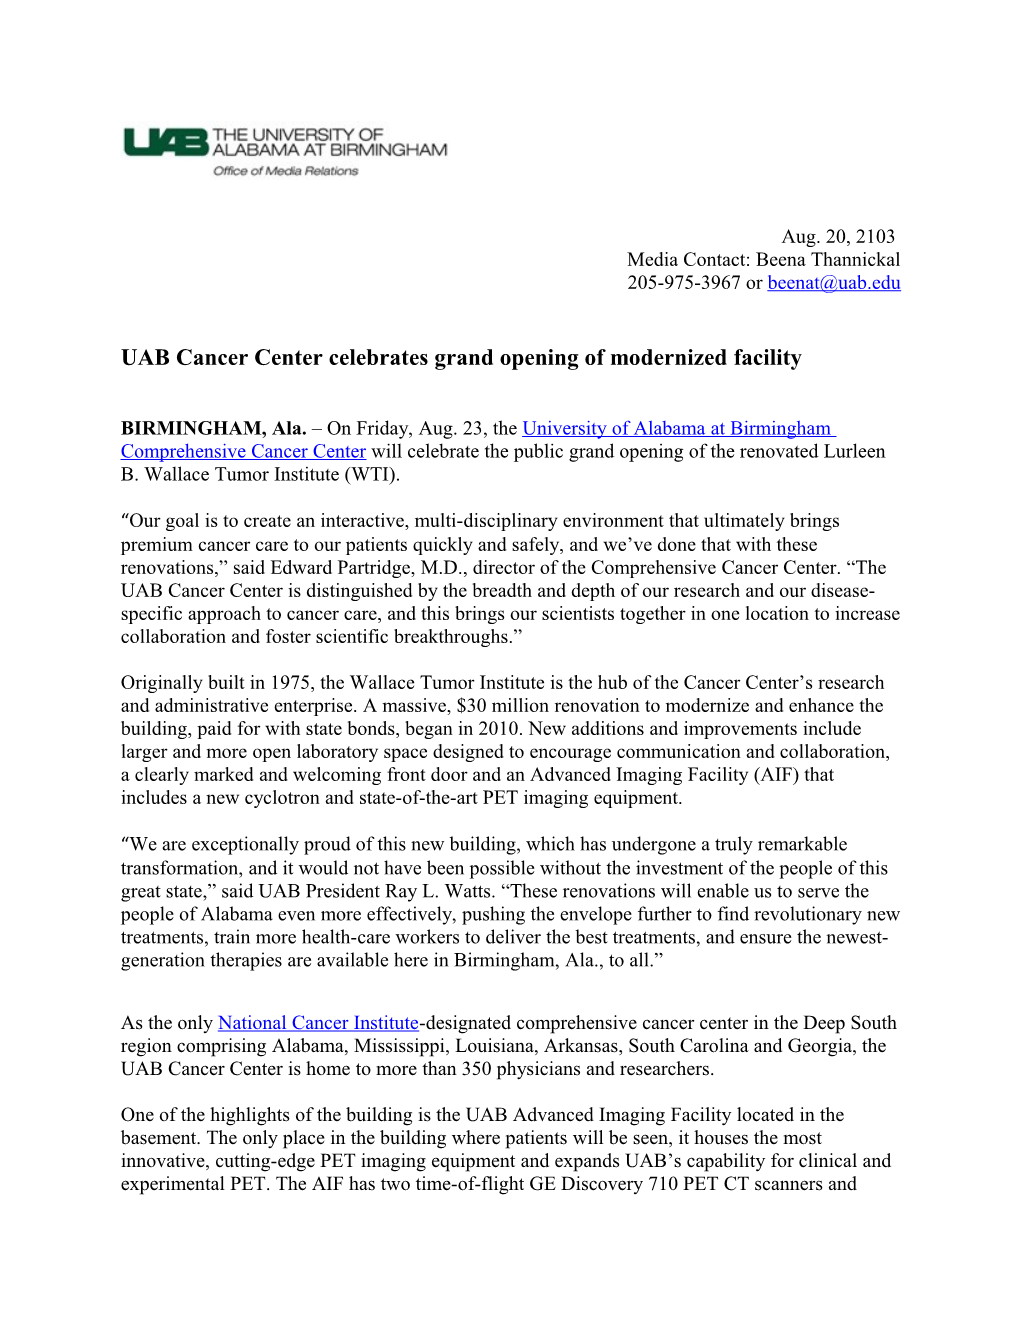 UAB Cancer Center Celebrates Grand Opening of Modernized Facility